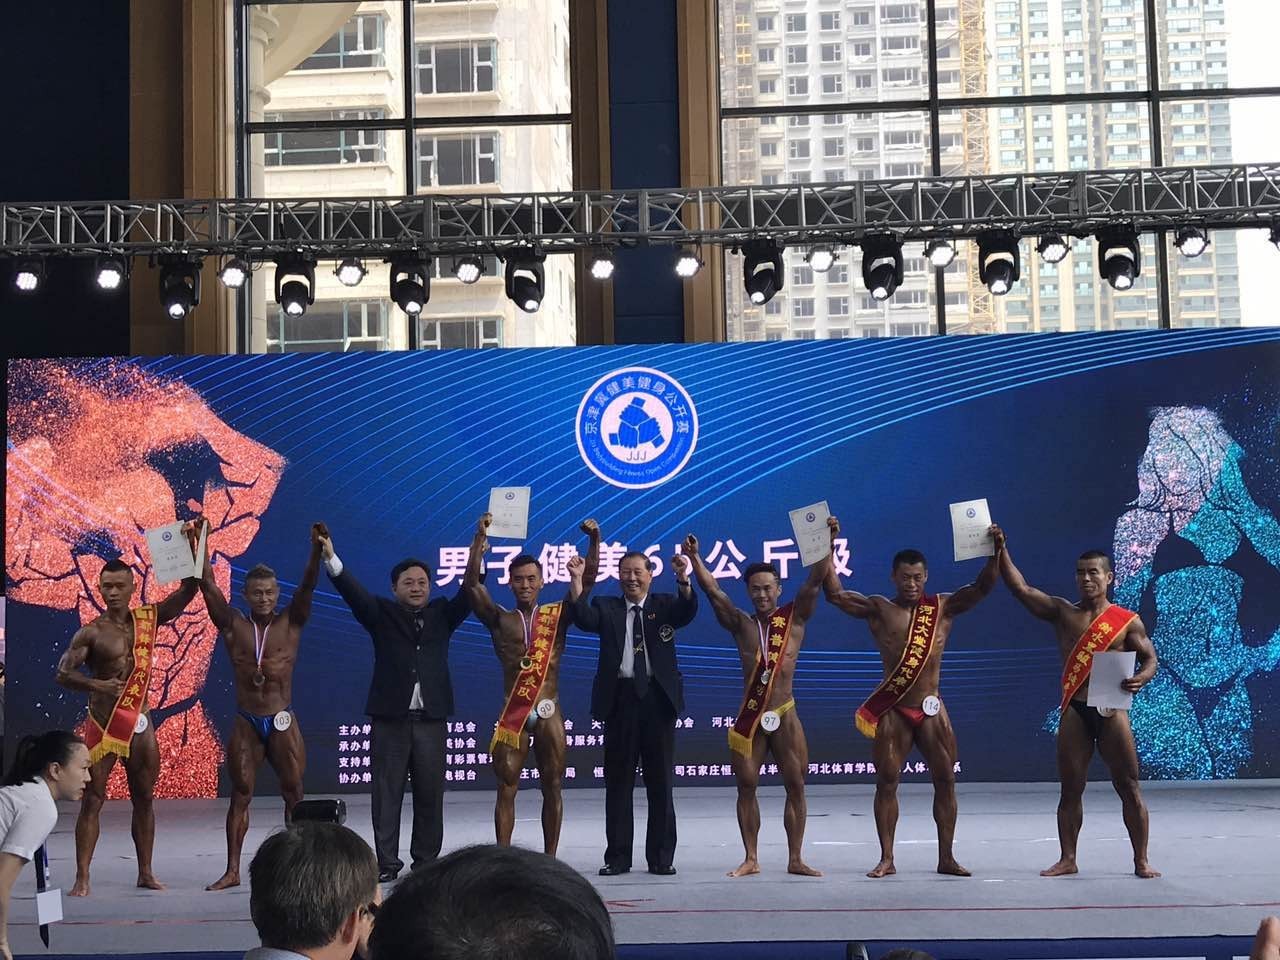 获奖名单丨第三届京津冀健身健美公开赛完美谢幕,完整名单现在公布!